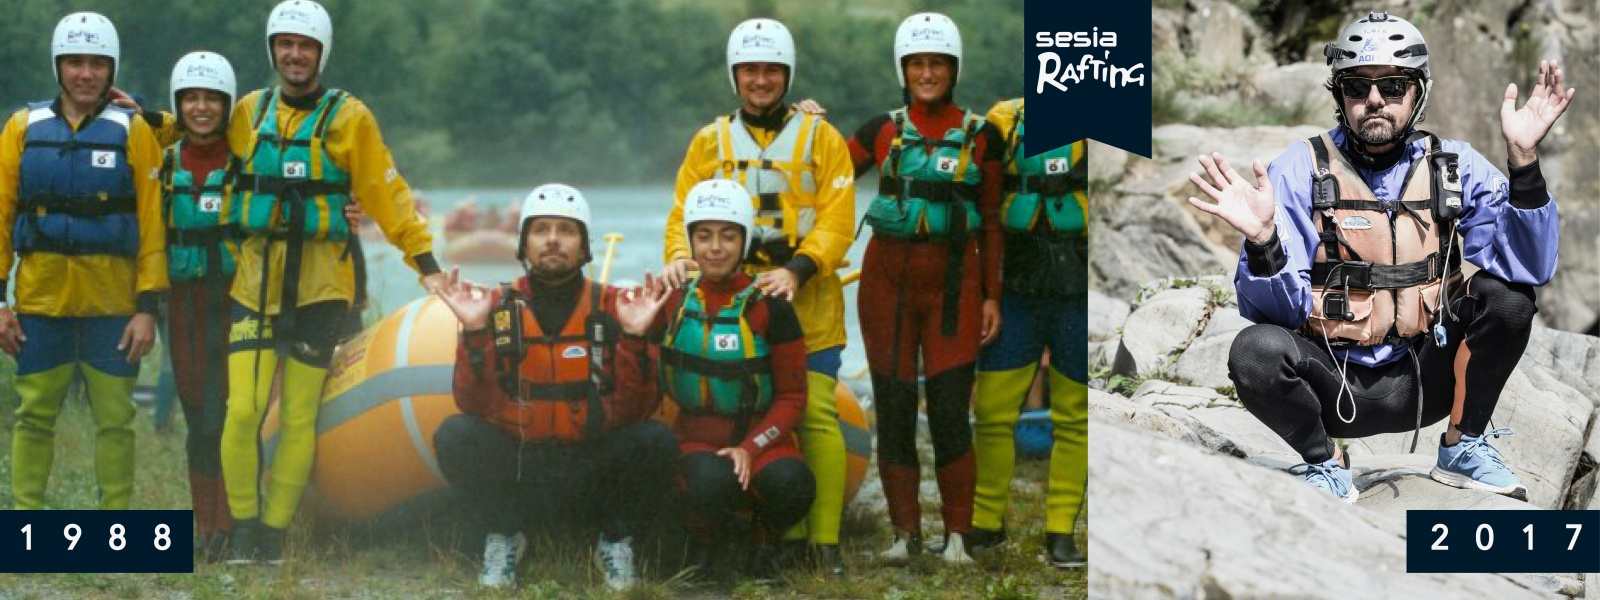 La storia di Sesia Rafting 1988-2017